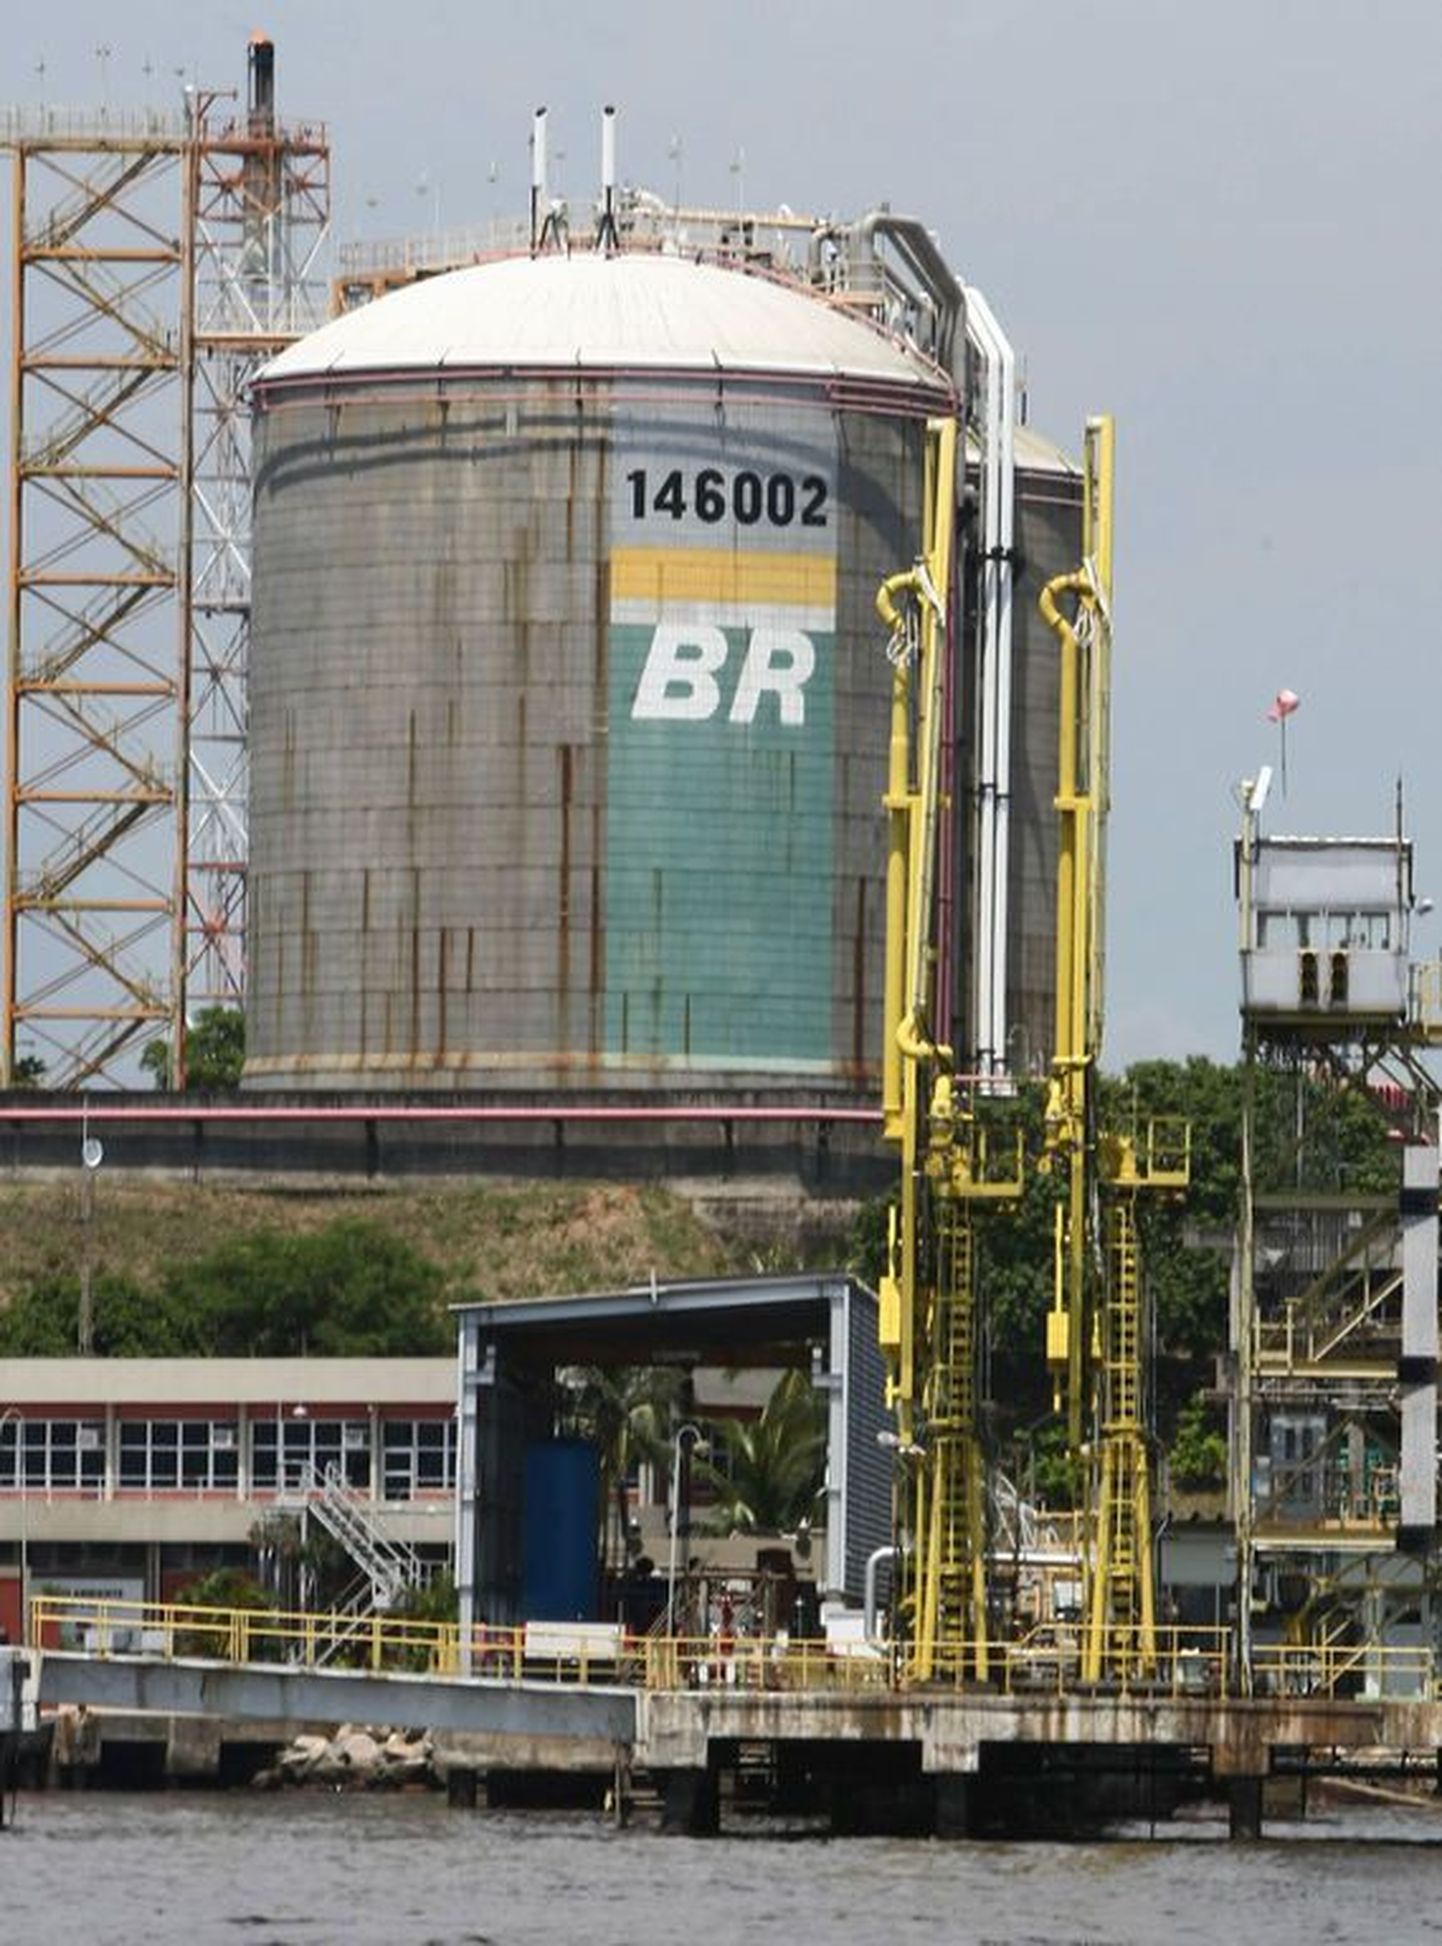 Brasiilia riigifirmale Petrobras kuuluv gaasi- ja naftatöötlemistehas.